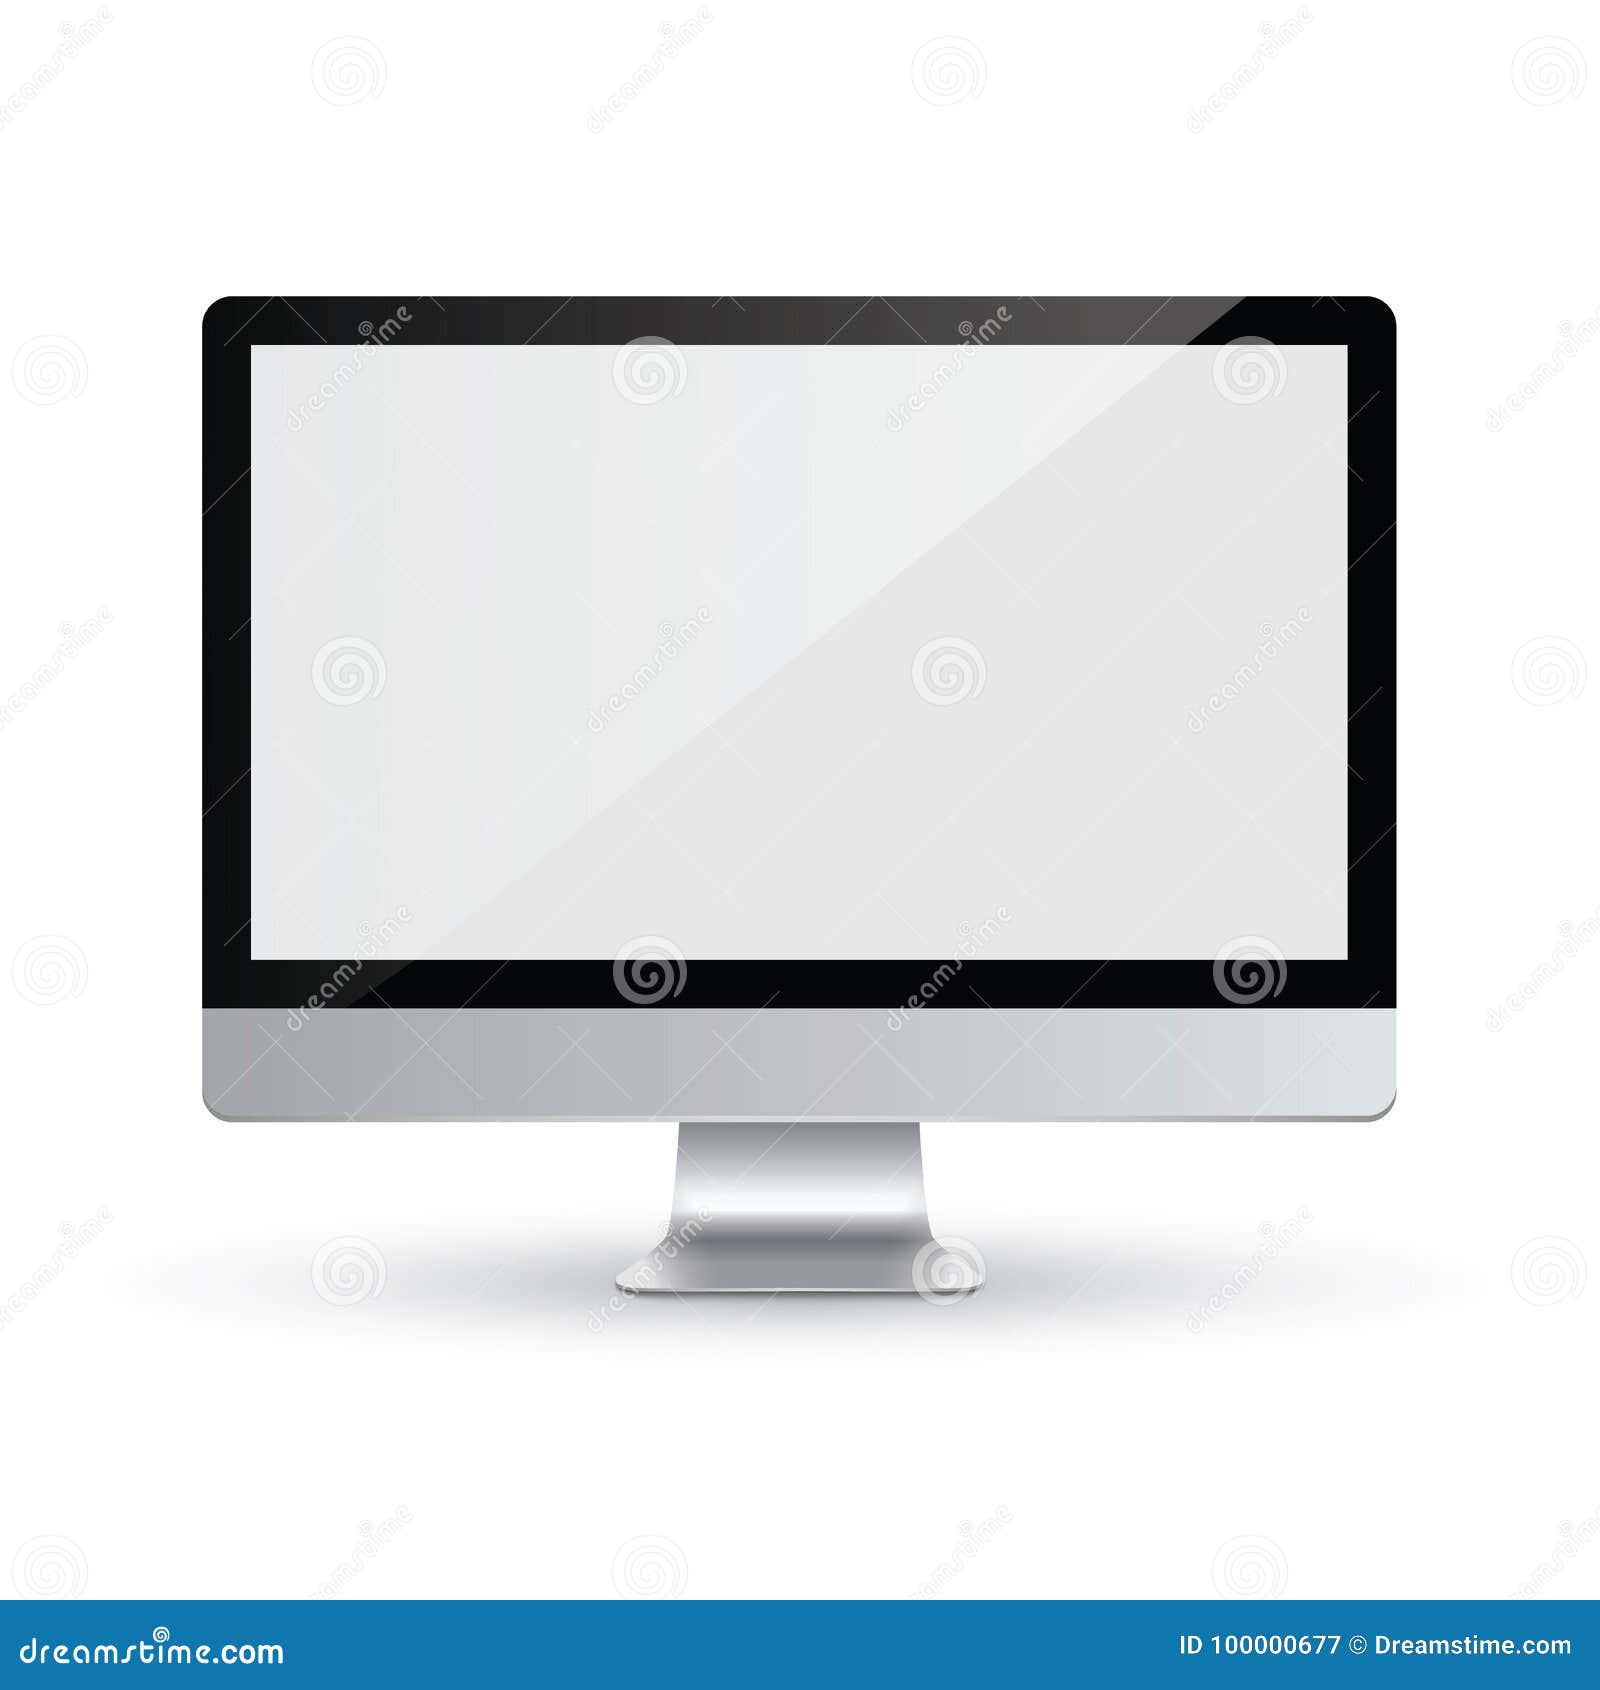 computer display imac